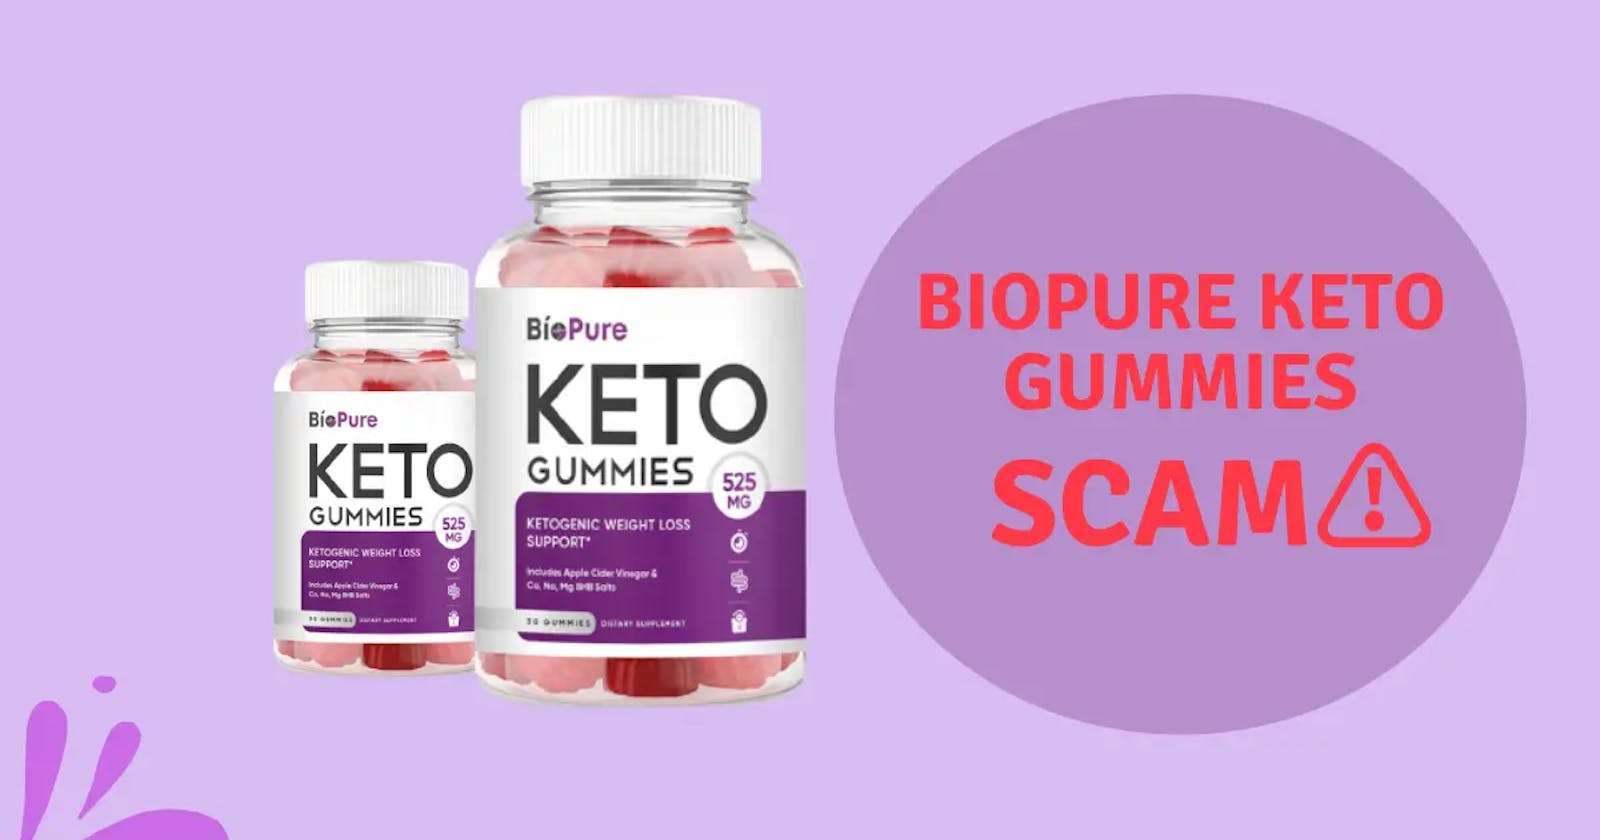 BioPure Keto Gummies Price, Reviews, Ingredients & Effect